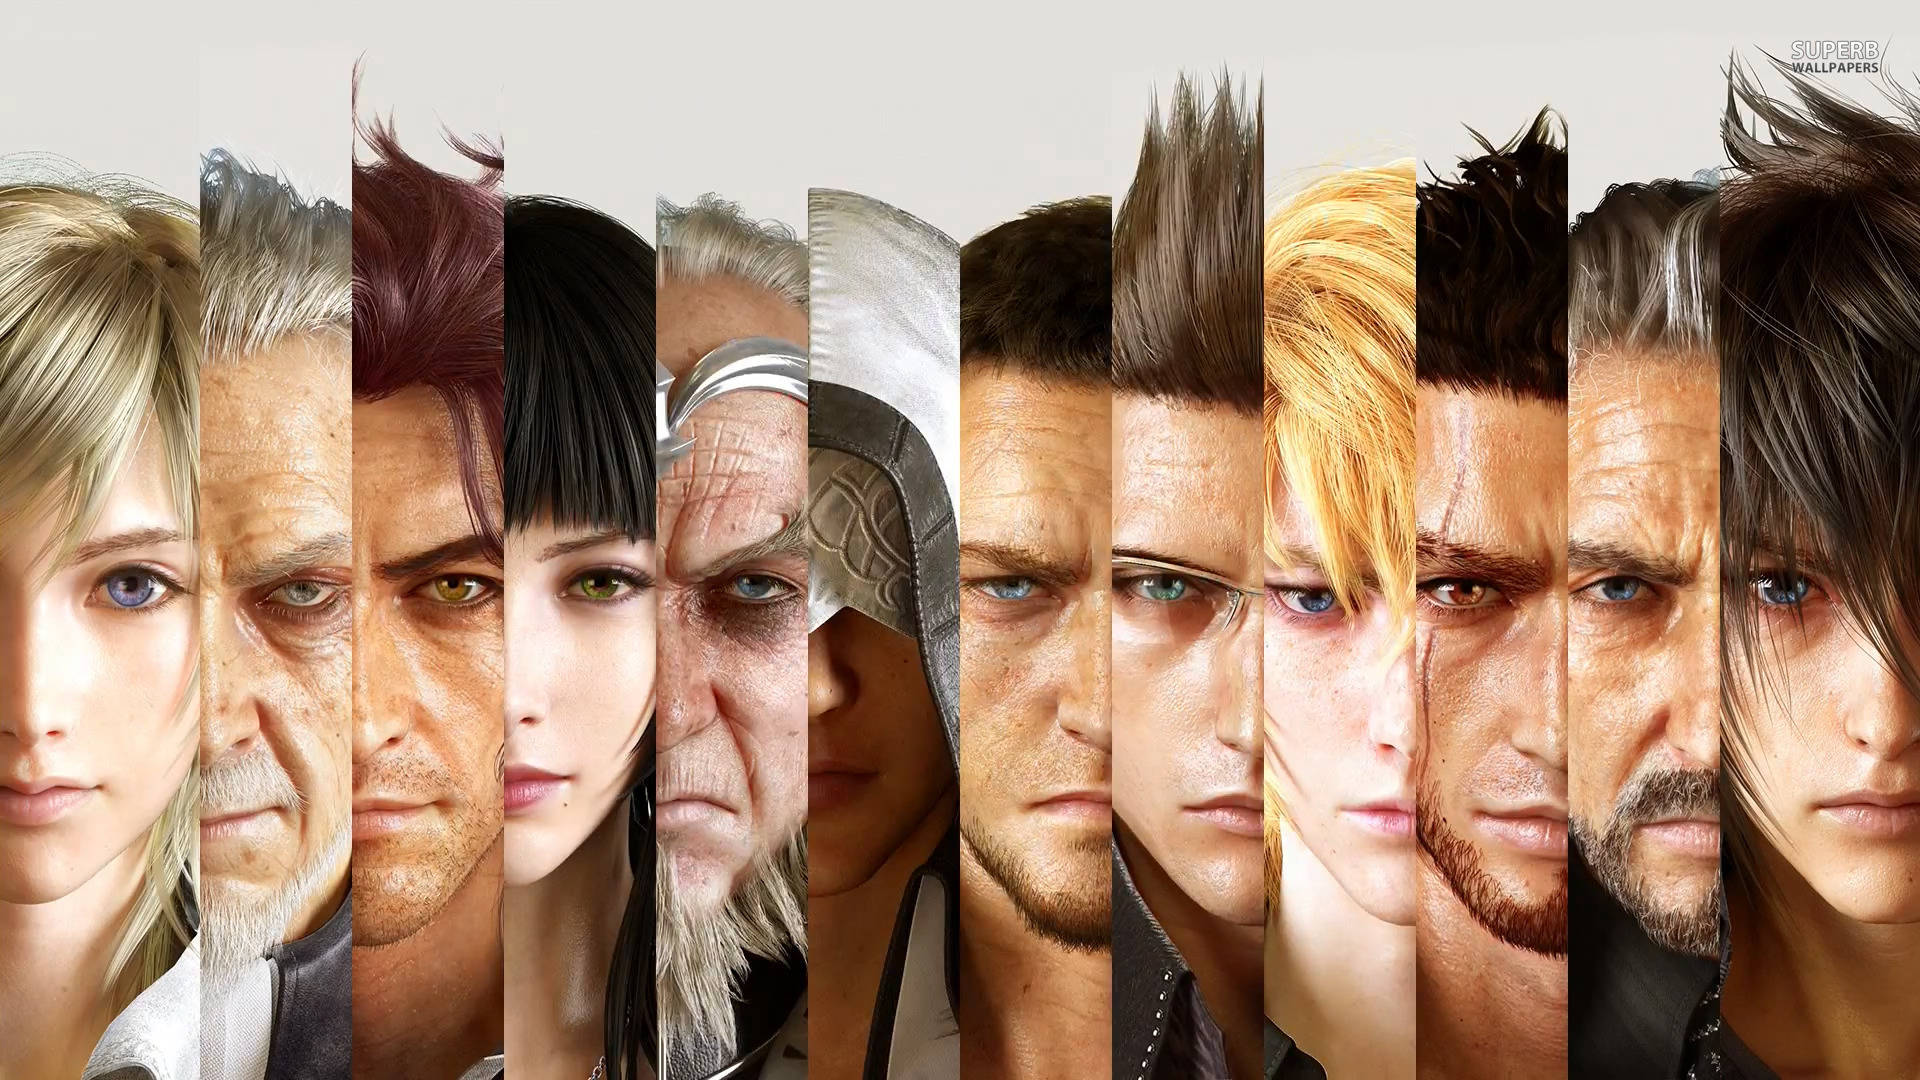 Final Fantasy Xv's Main Cast